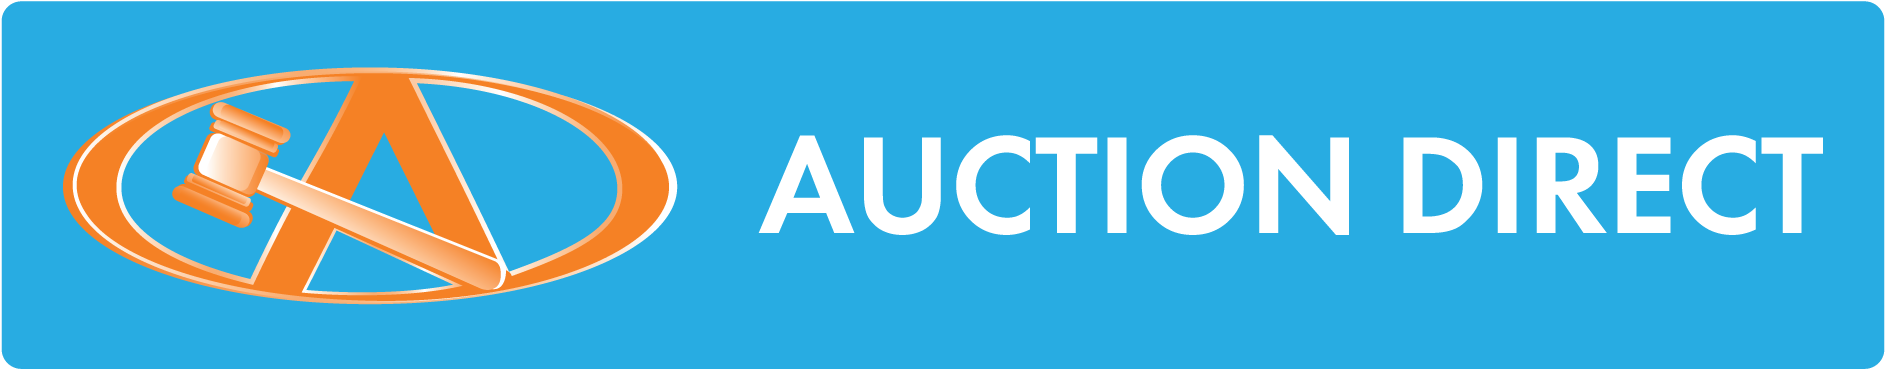 Moncton Auction Direct - Auction Direct Clipart (1913x390), Png Download